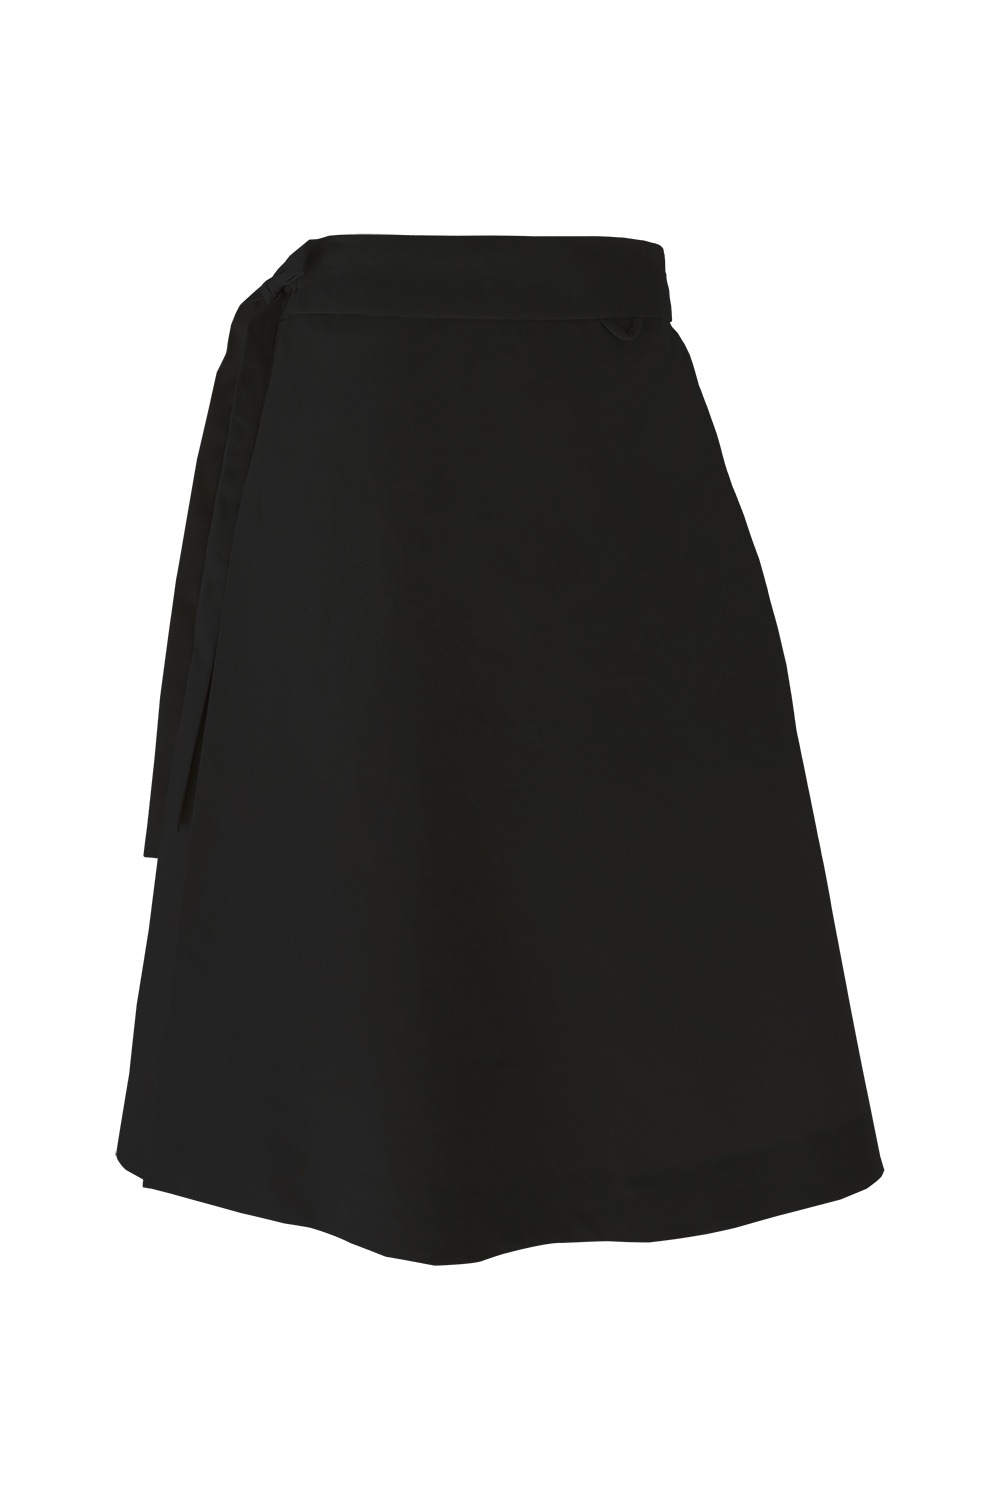 Leerum Skirt [Black]